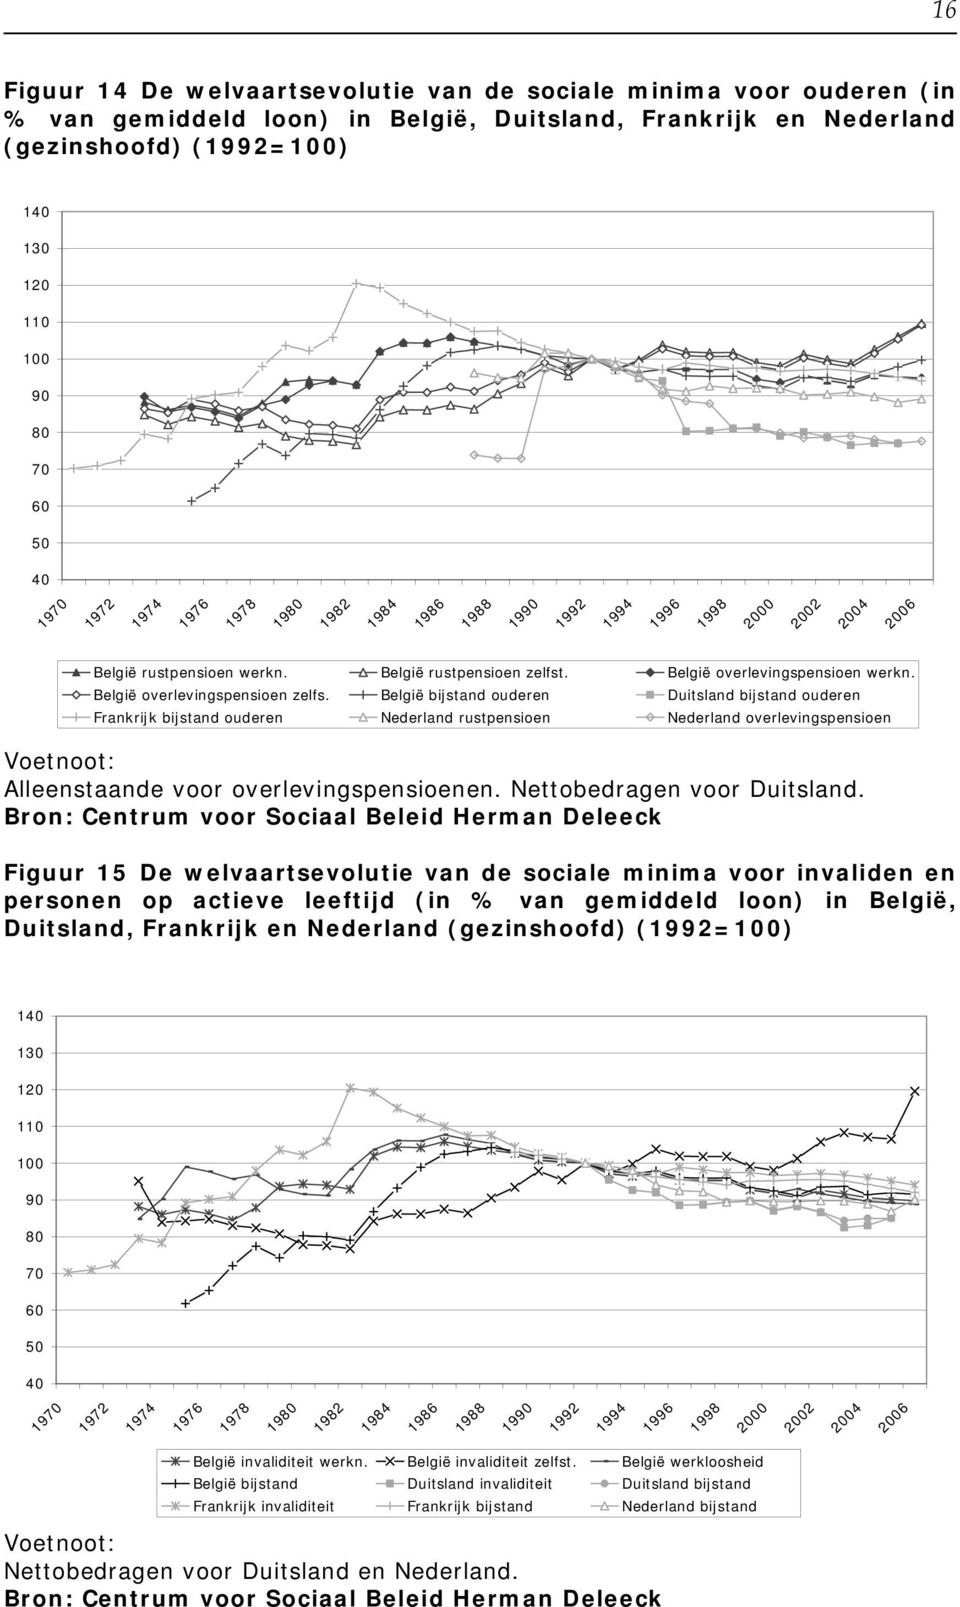 ouderen Duitsland ouderen Frankrijk ouderen Nederland rustpensioen Nederland overlevingspensioen Voetnoot: Alleenstaande voor overlevingspensioenen. Nettobedragen voor Duitsland.